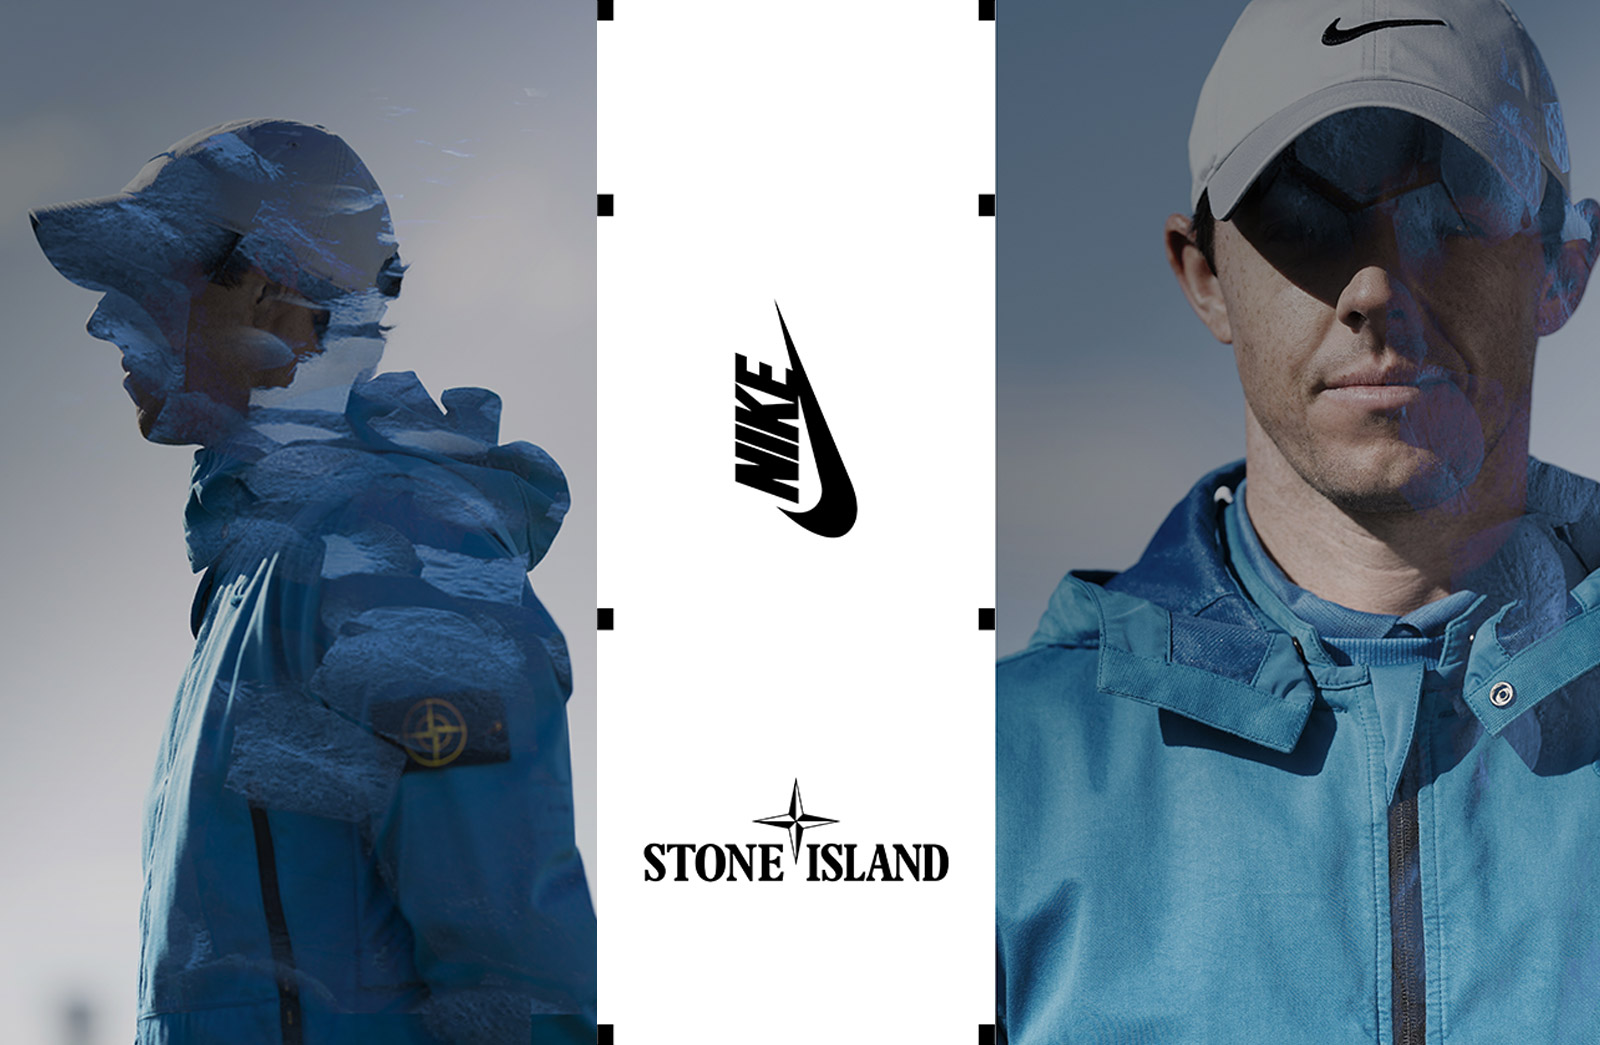 Стон найк. Найк стон Айленд. Коллаборация найк и стон Айленд. Nike Stone Island коллаборация. Stone Island коллаборации с найк.